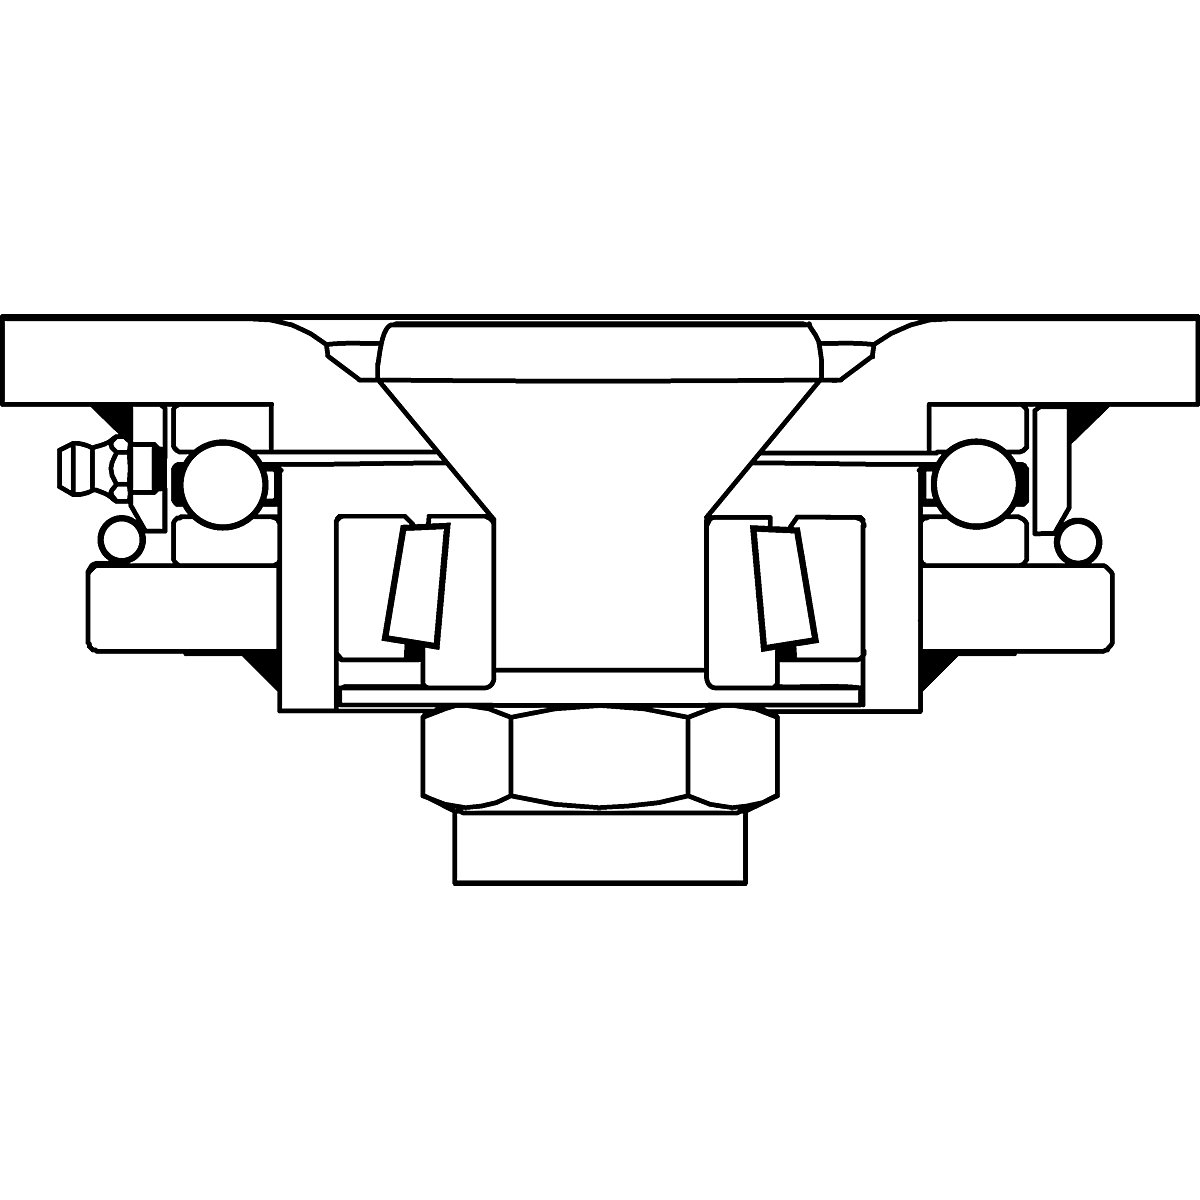 Cubierta de poliuretano, dimensiones de la placa 175 x 140 mm – Proroll (Imagen del producto 4)-3